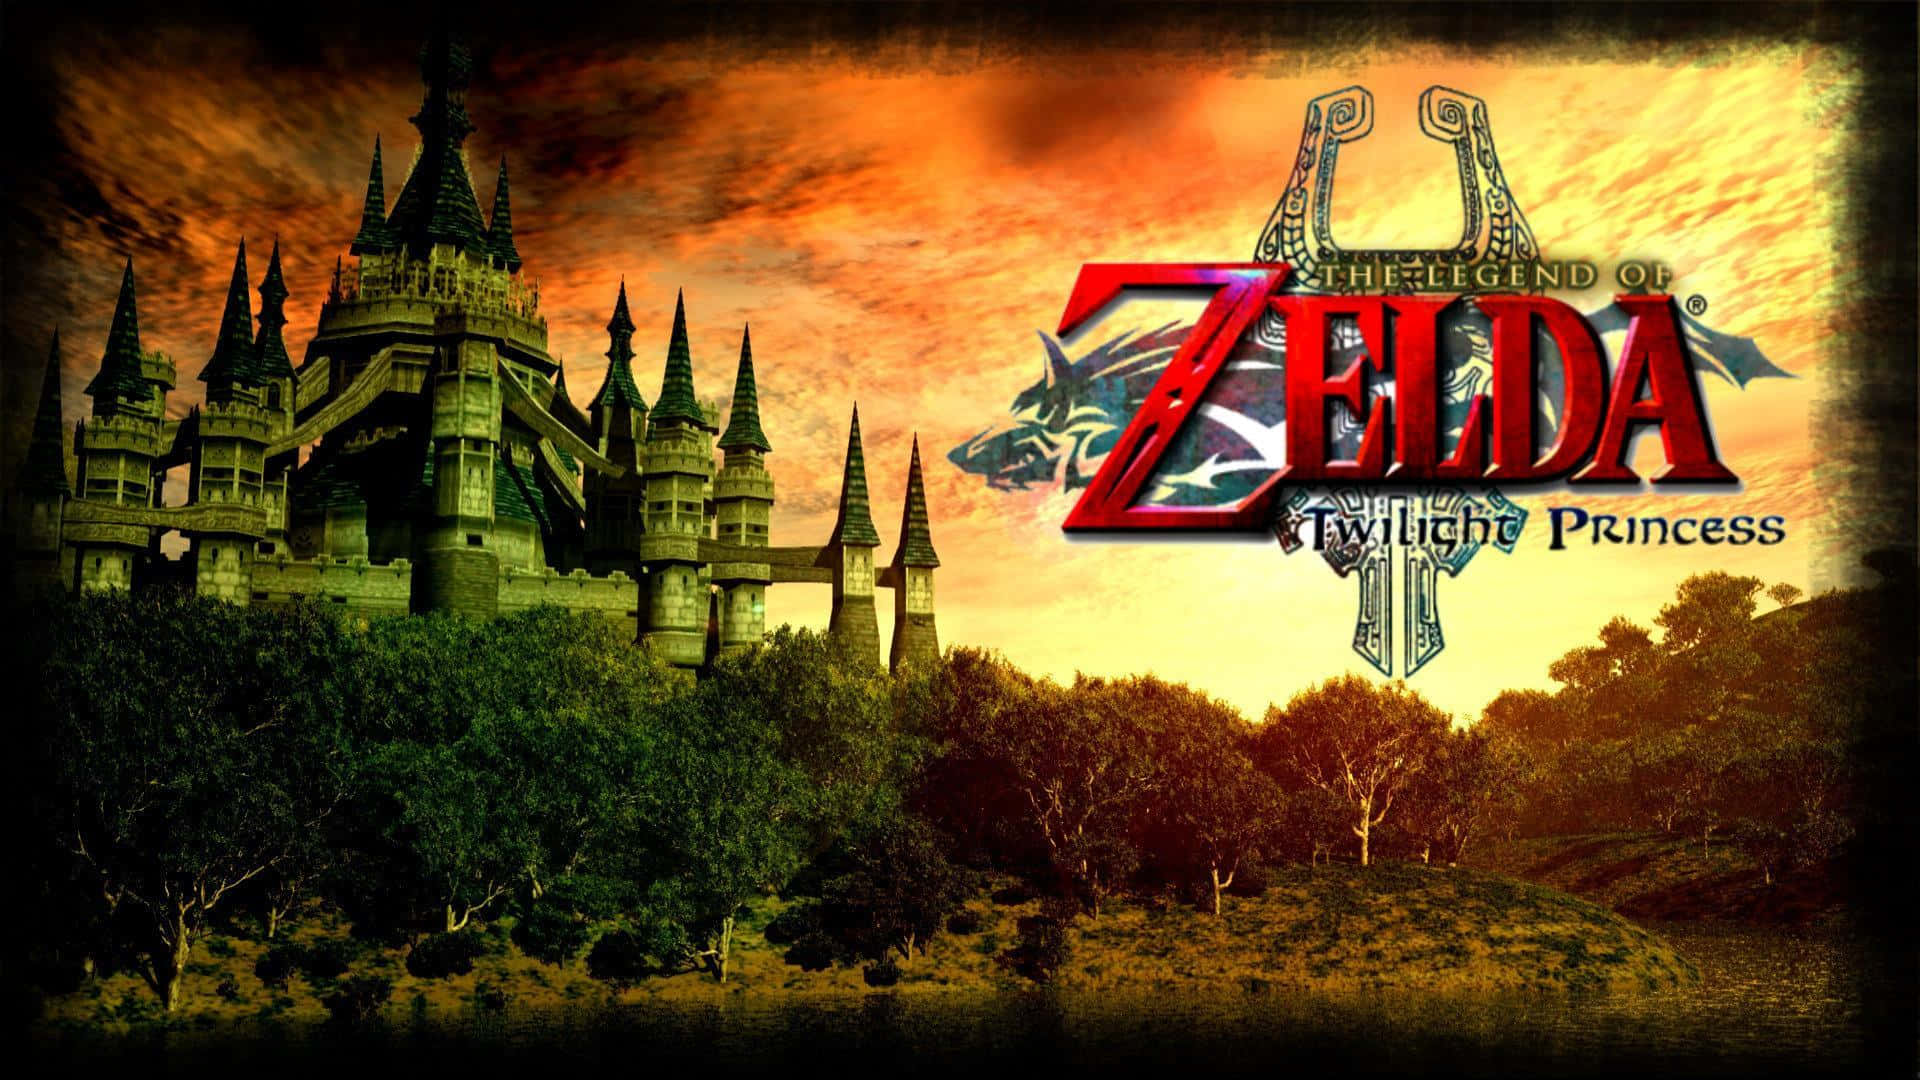 Einepisches Abenteuer Erwartet Dich In The Legend Of Zelda: Twilight Princess. Wallpaper